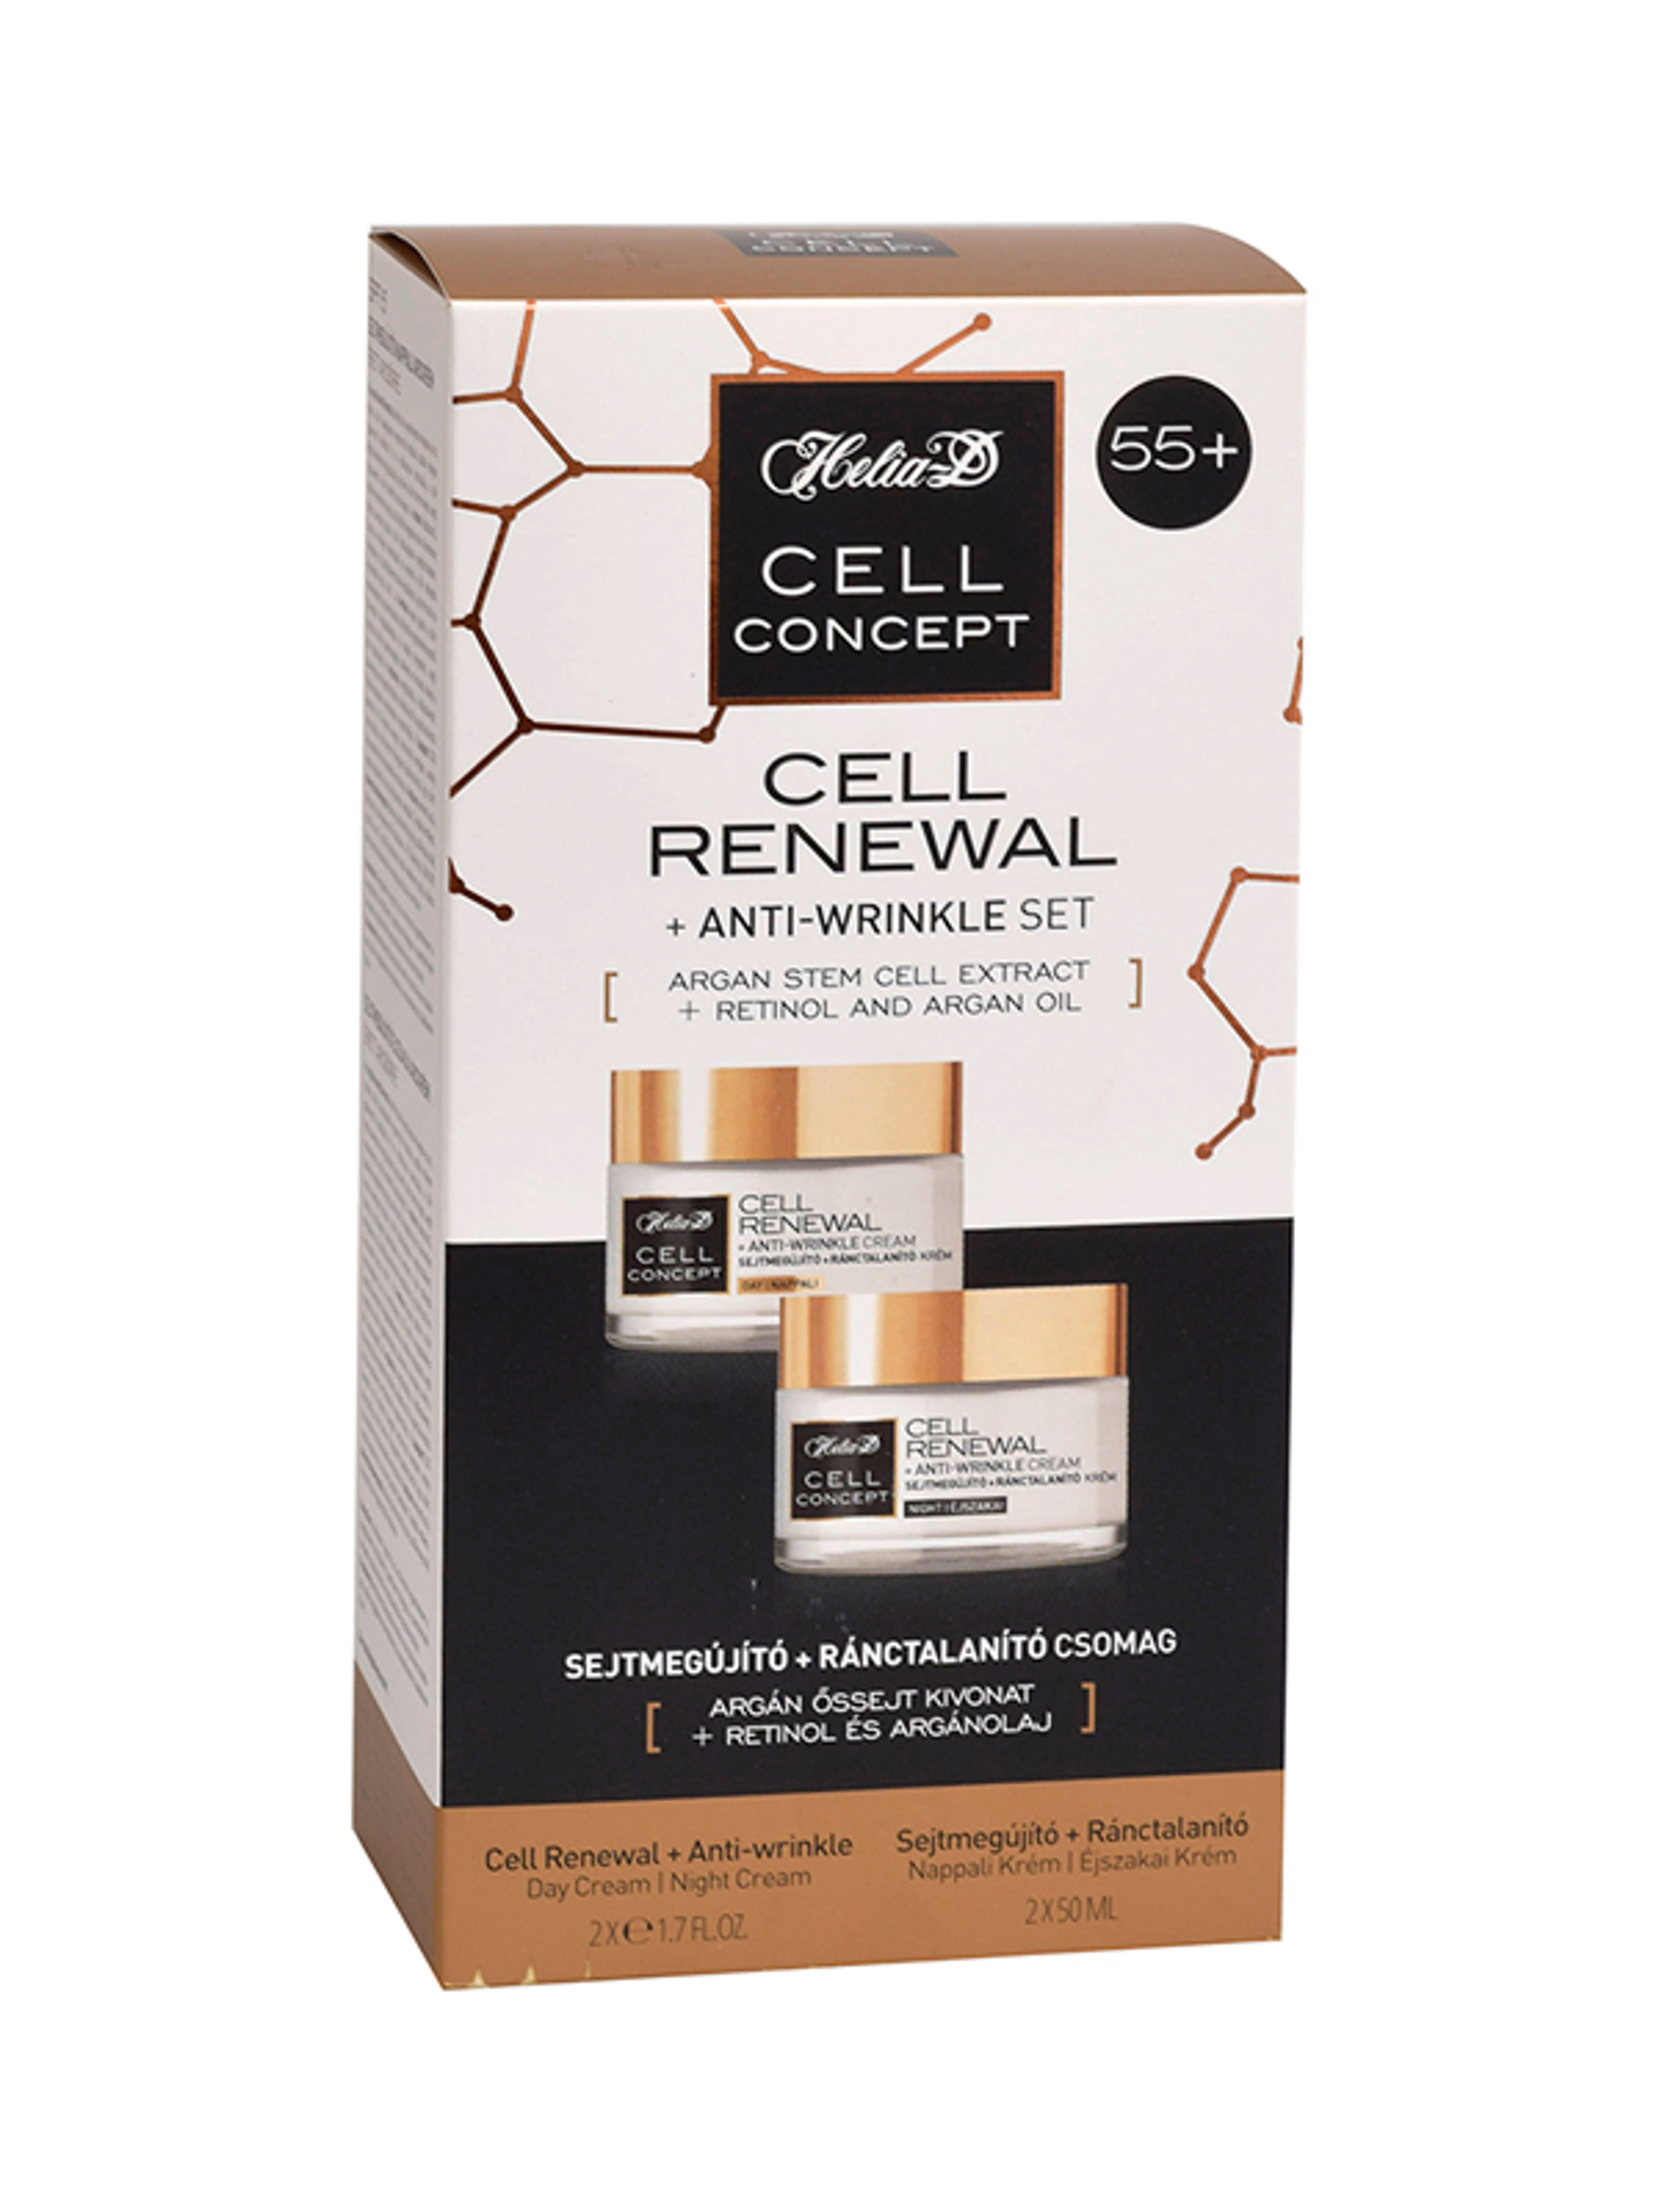 Helia-D Cell Concept sejtmegújító ránctalanító csomag 55+ 2x50 ml - 100 ml